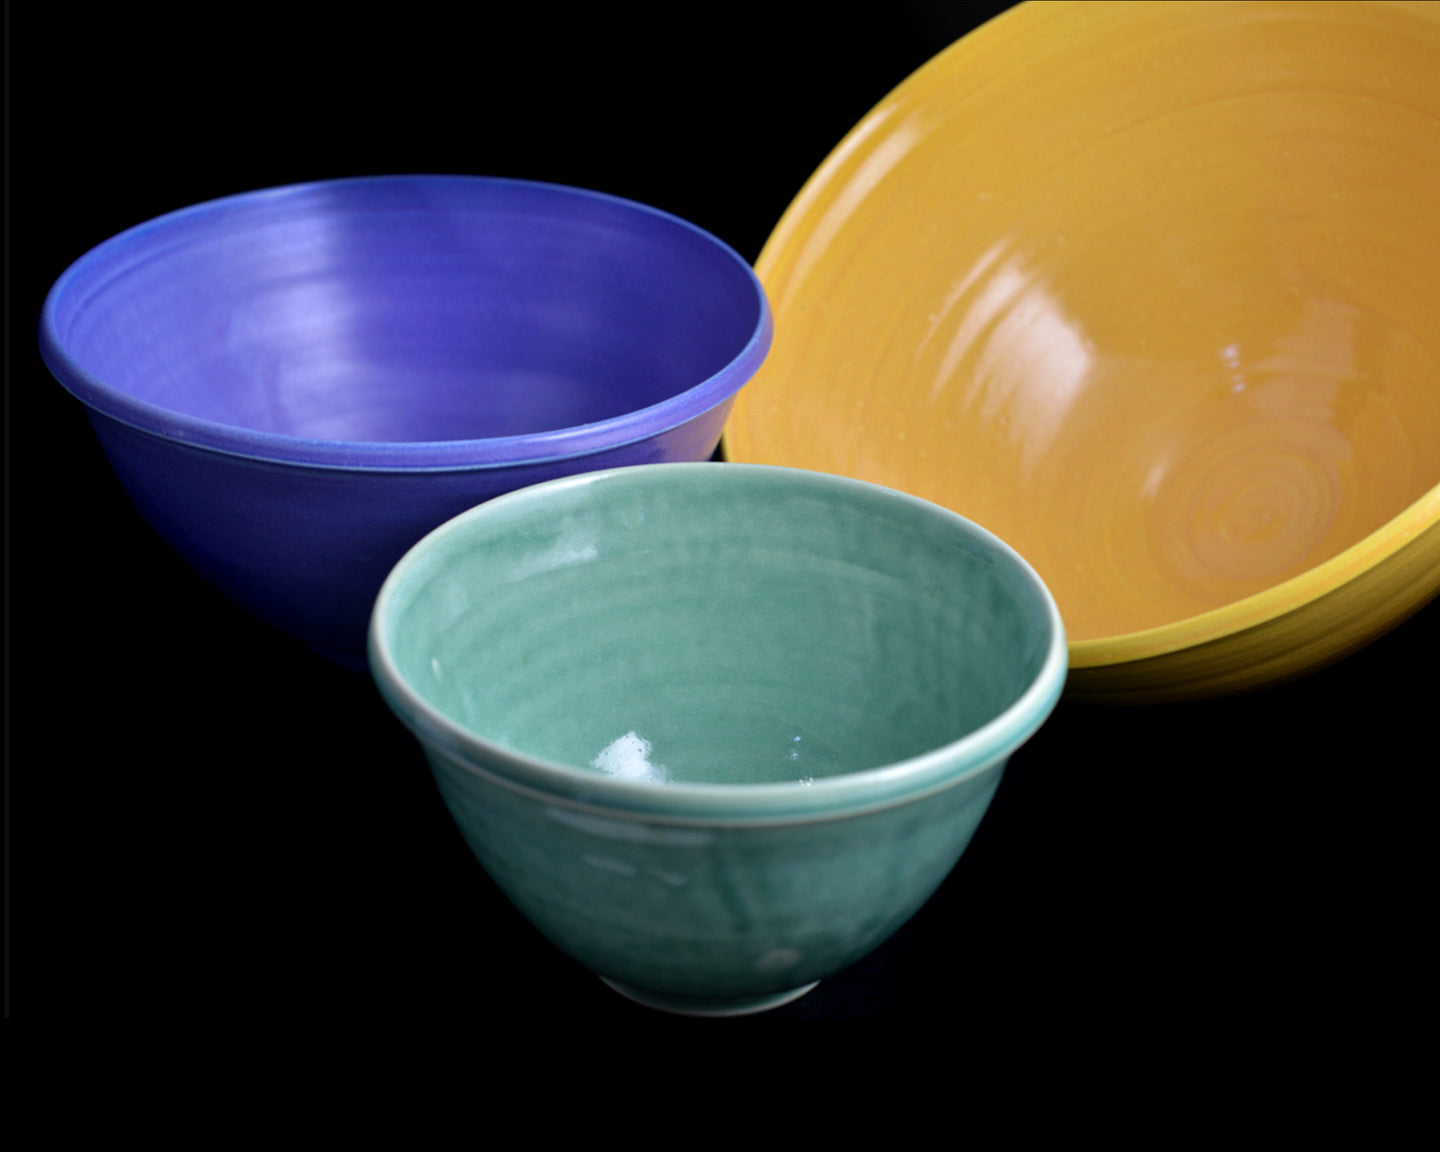 Soup Bowl, Ceramic Bowl, Mixing Bowl, Turquoise Bowl, Small Bowl, Serving  Bowl, Cereal Bowl, Pottery Bowl, Serving Dish, Green Bowl 